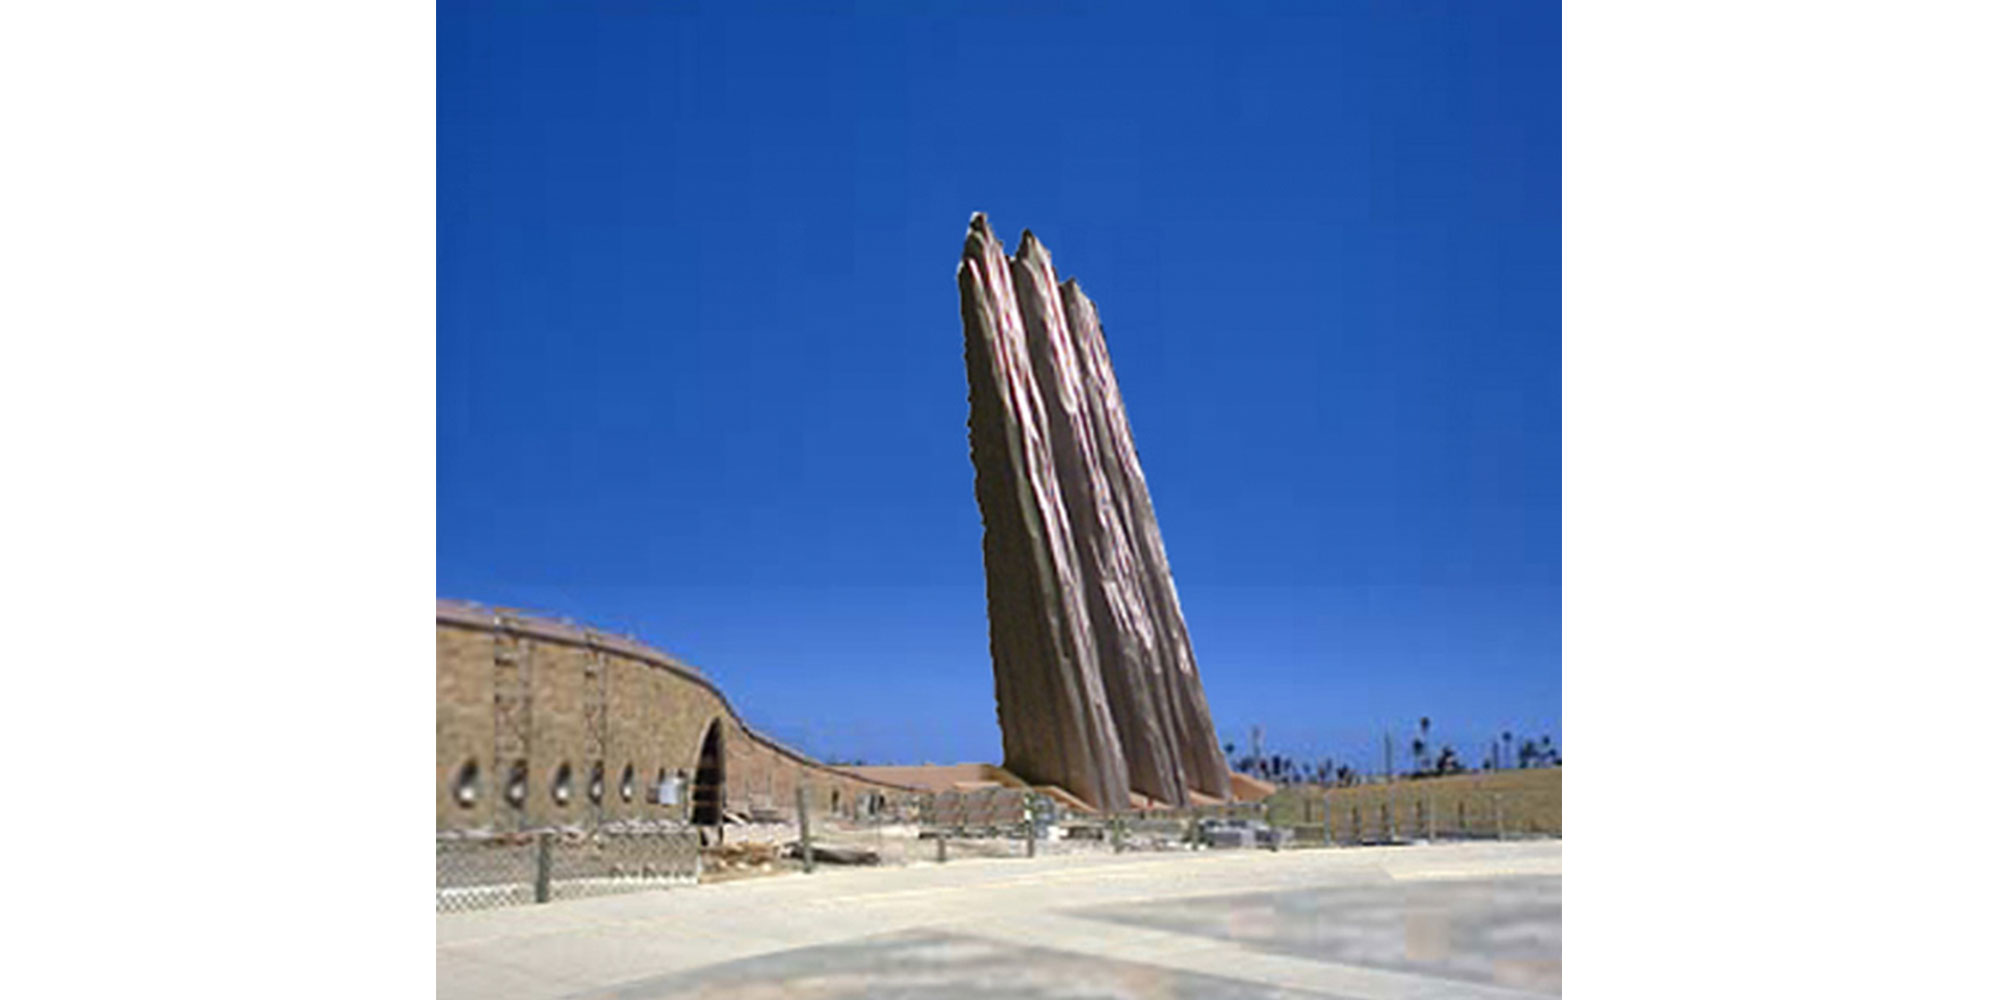 Monument to the Third Millennium